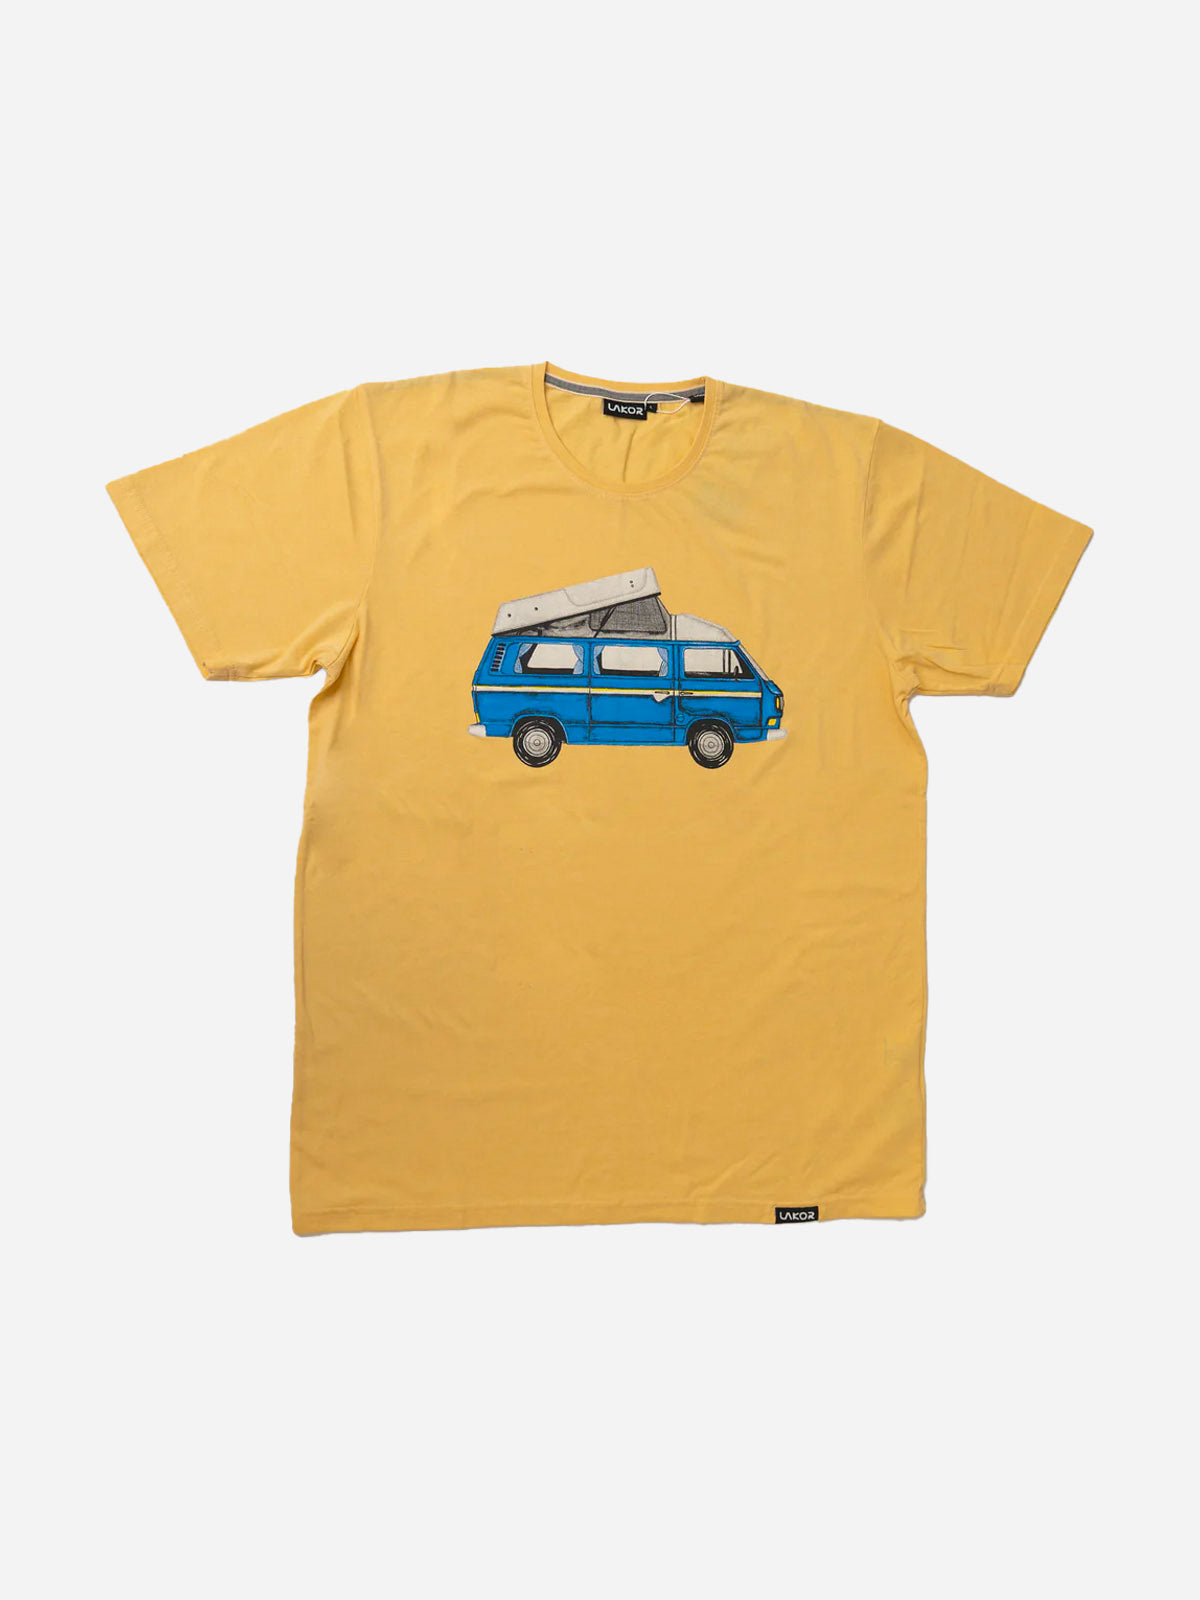 Blue Van T-shirt - Light Yellow